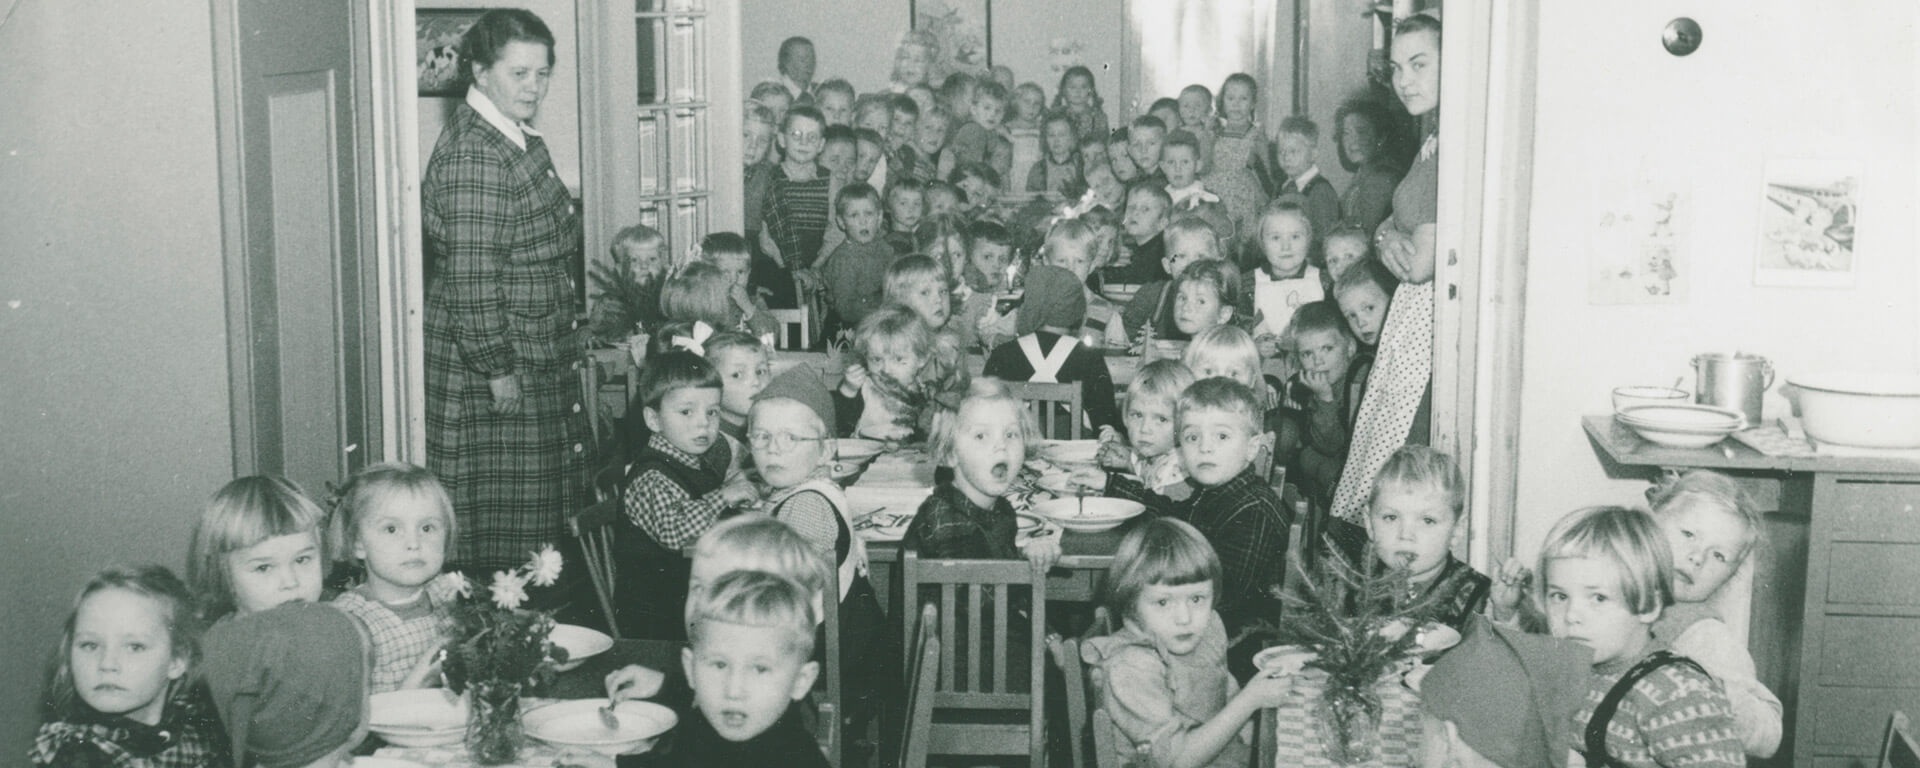 Rauhalan lastentarhan lapset yhteisellä joulupuurolla 1950-luvulla. Lastentarhassa oli lähes sen koko historian ajan tapana asetella jouluisin kaikki pöydät pitkän käytävän varrelle ikään kuin pitkäksi yhteiseksi pöydäksi. Pöydillä on kukkia, kuusen havuja ja kynttilöitä. Osalla lapsista on tonttulakki päässä.